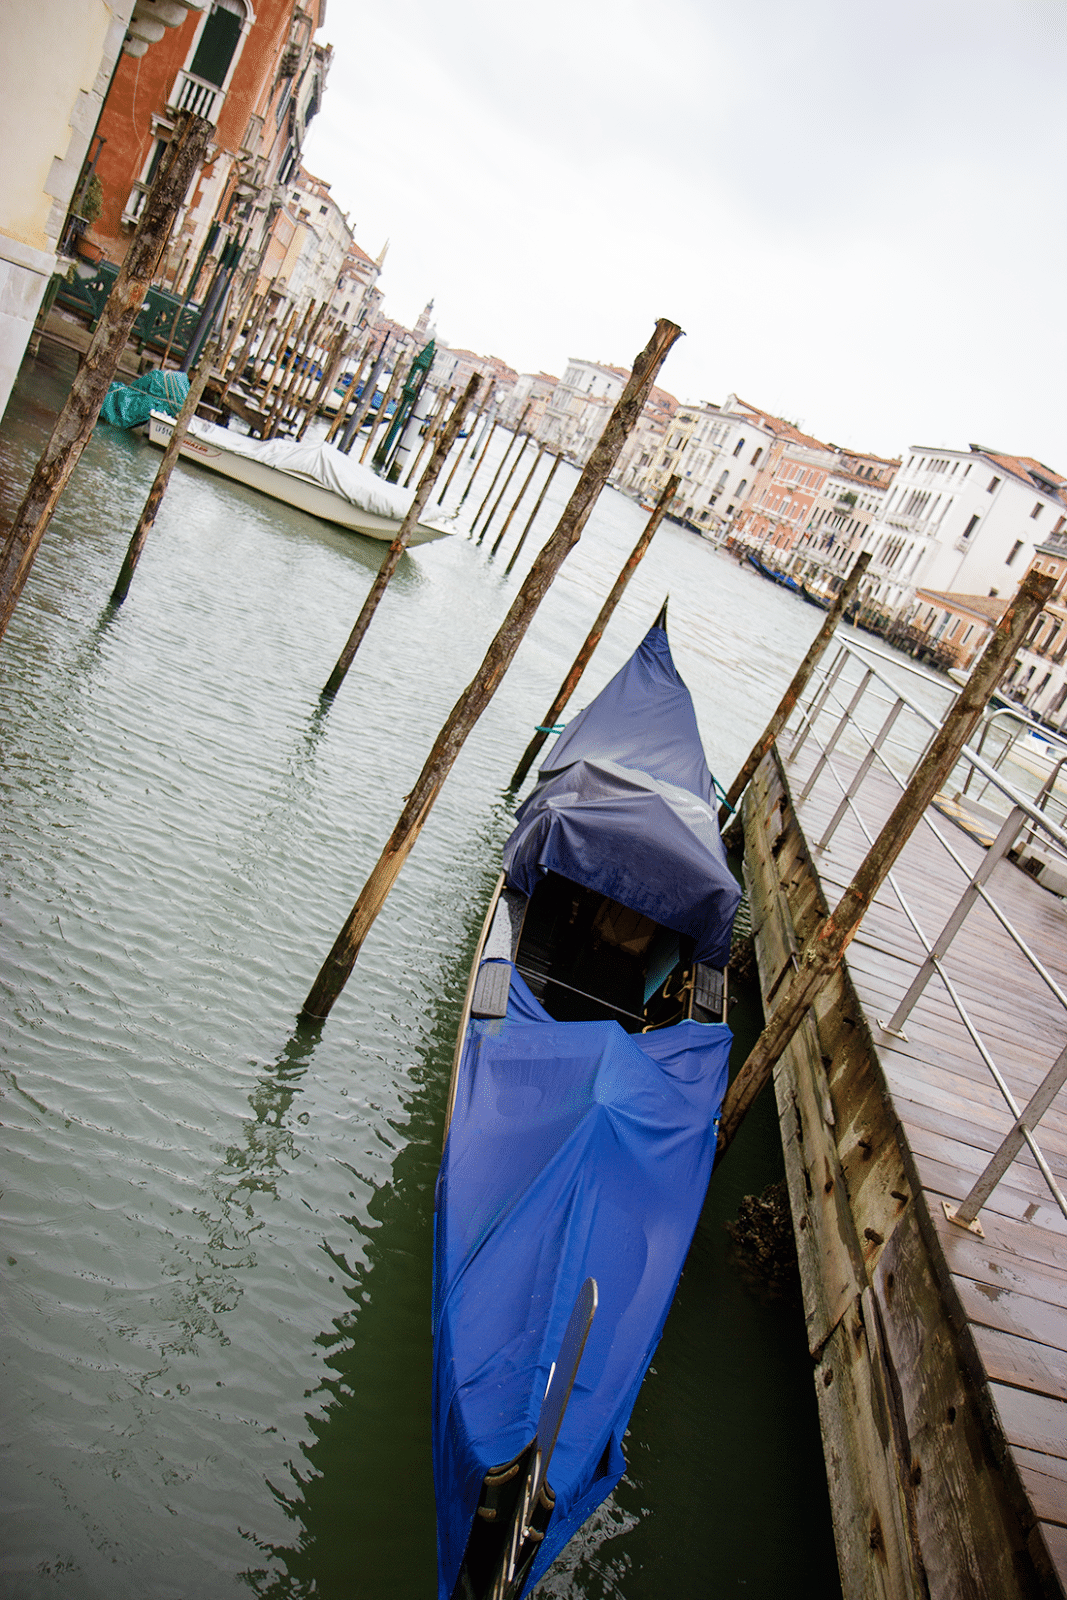 Rainy Day in Venice, Italy